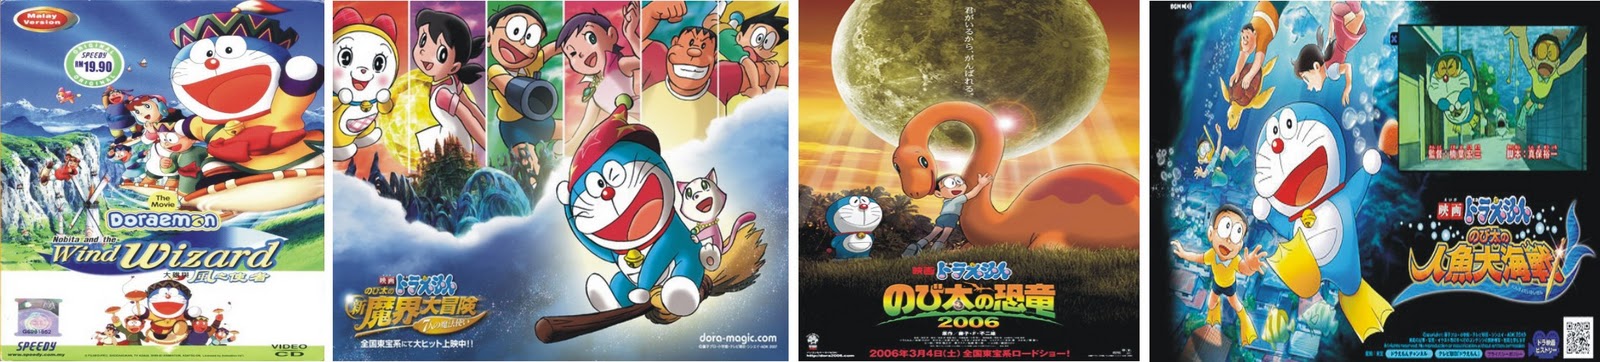 A M D R  Download  Doraemon  The Movie  Lengkap Dan Complete